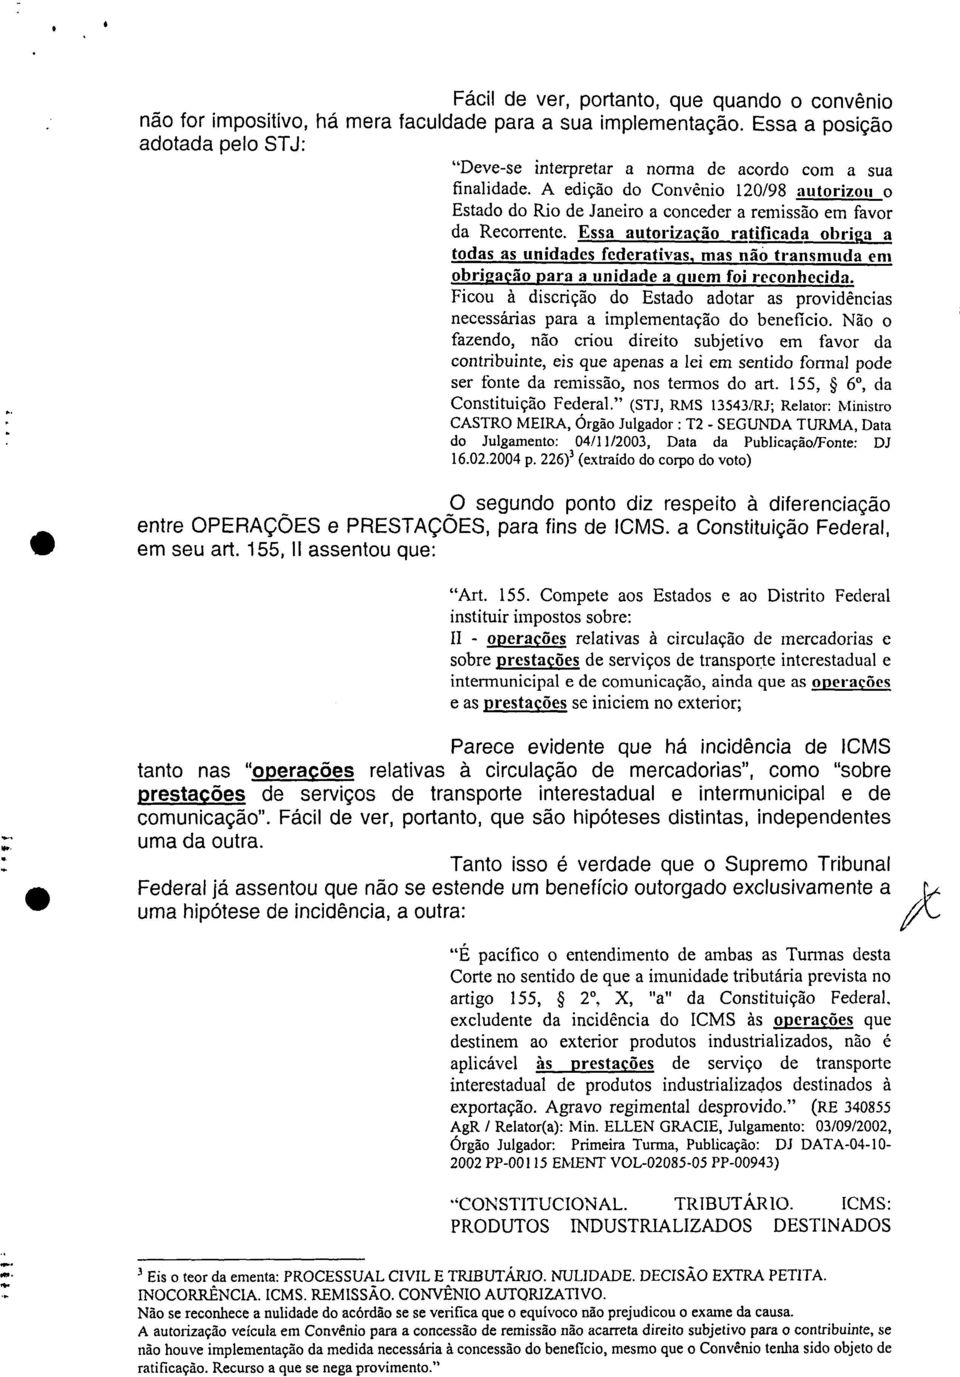 A edição do Convênio 120/98 autorizou o Estado do Rio de Janeiro a conceder a remissão em favor da Recorrente.